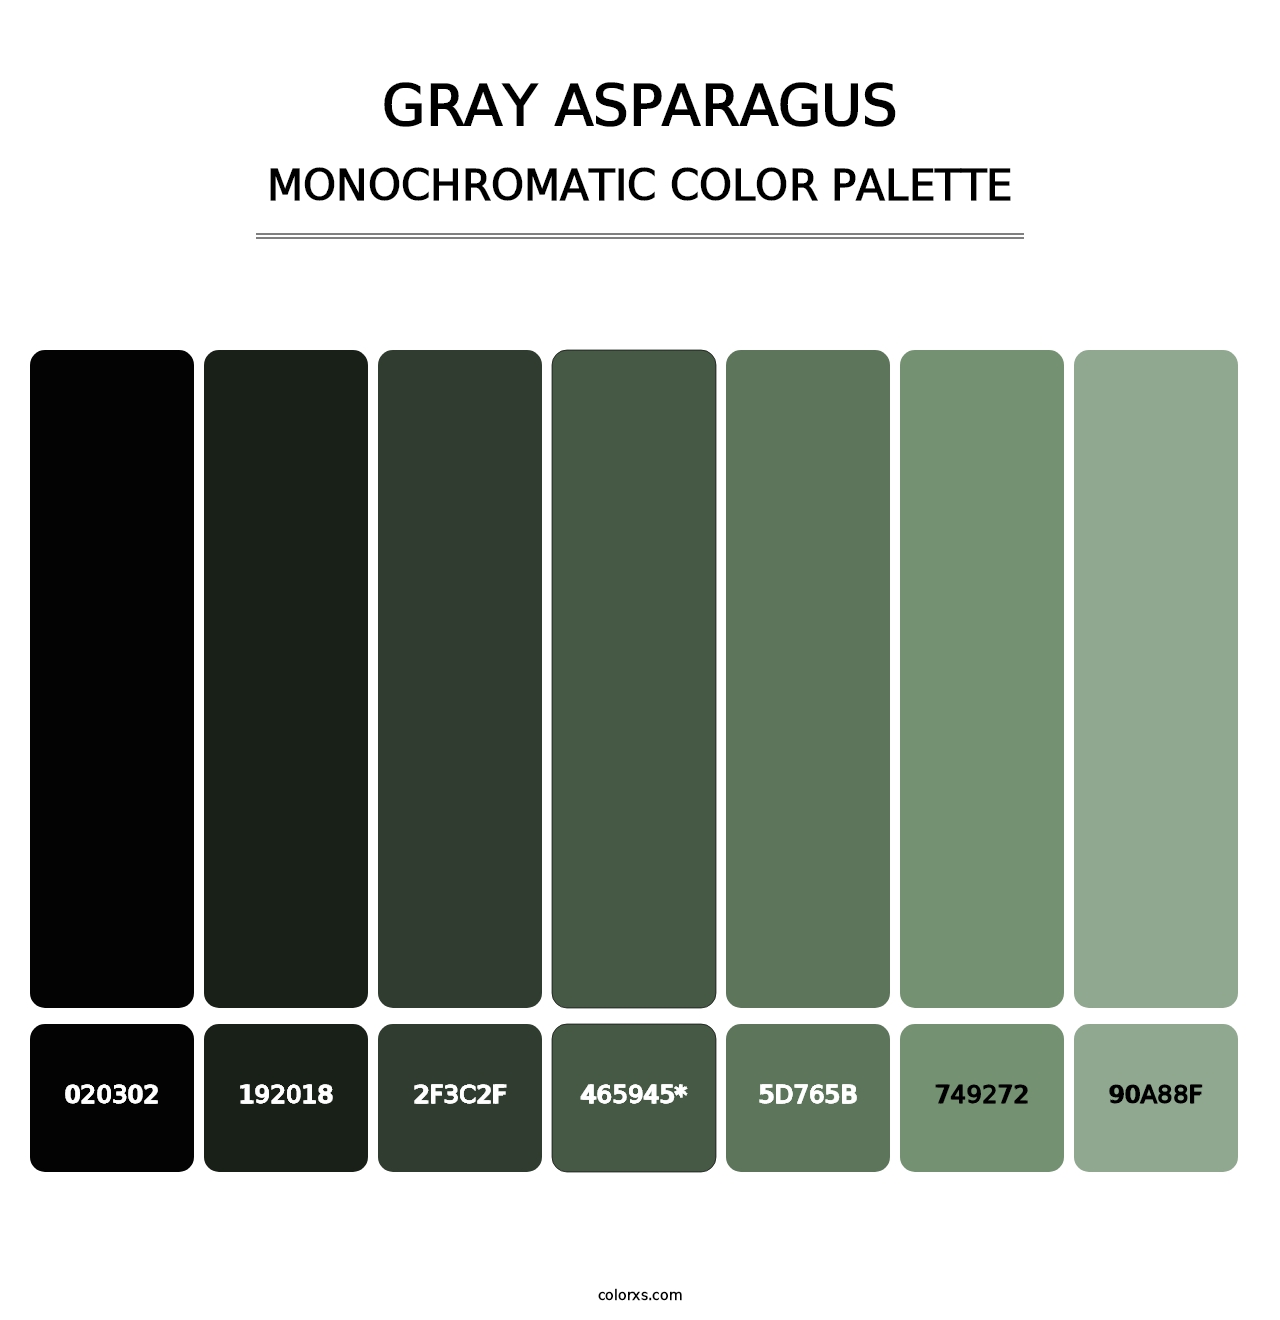 Gray Asparagus - Monochromatic Color Palette